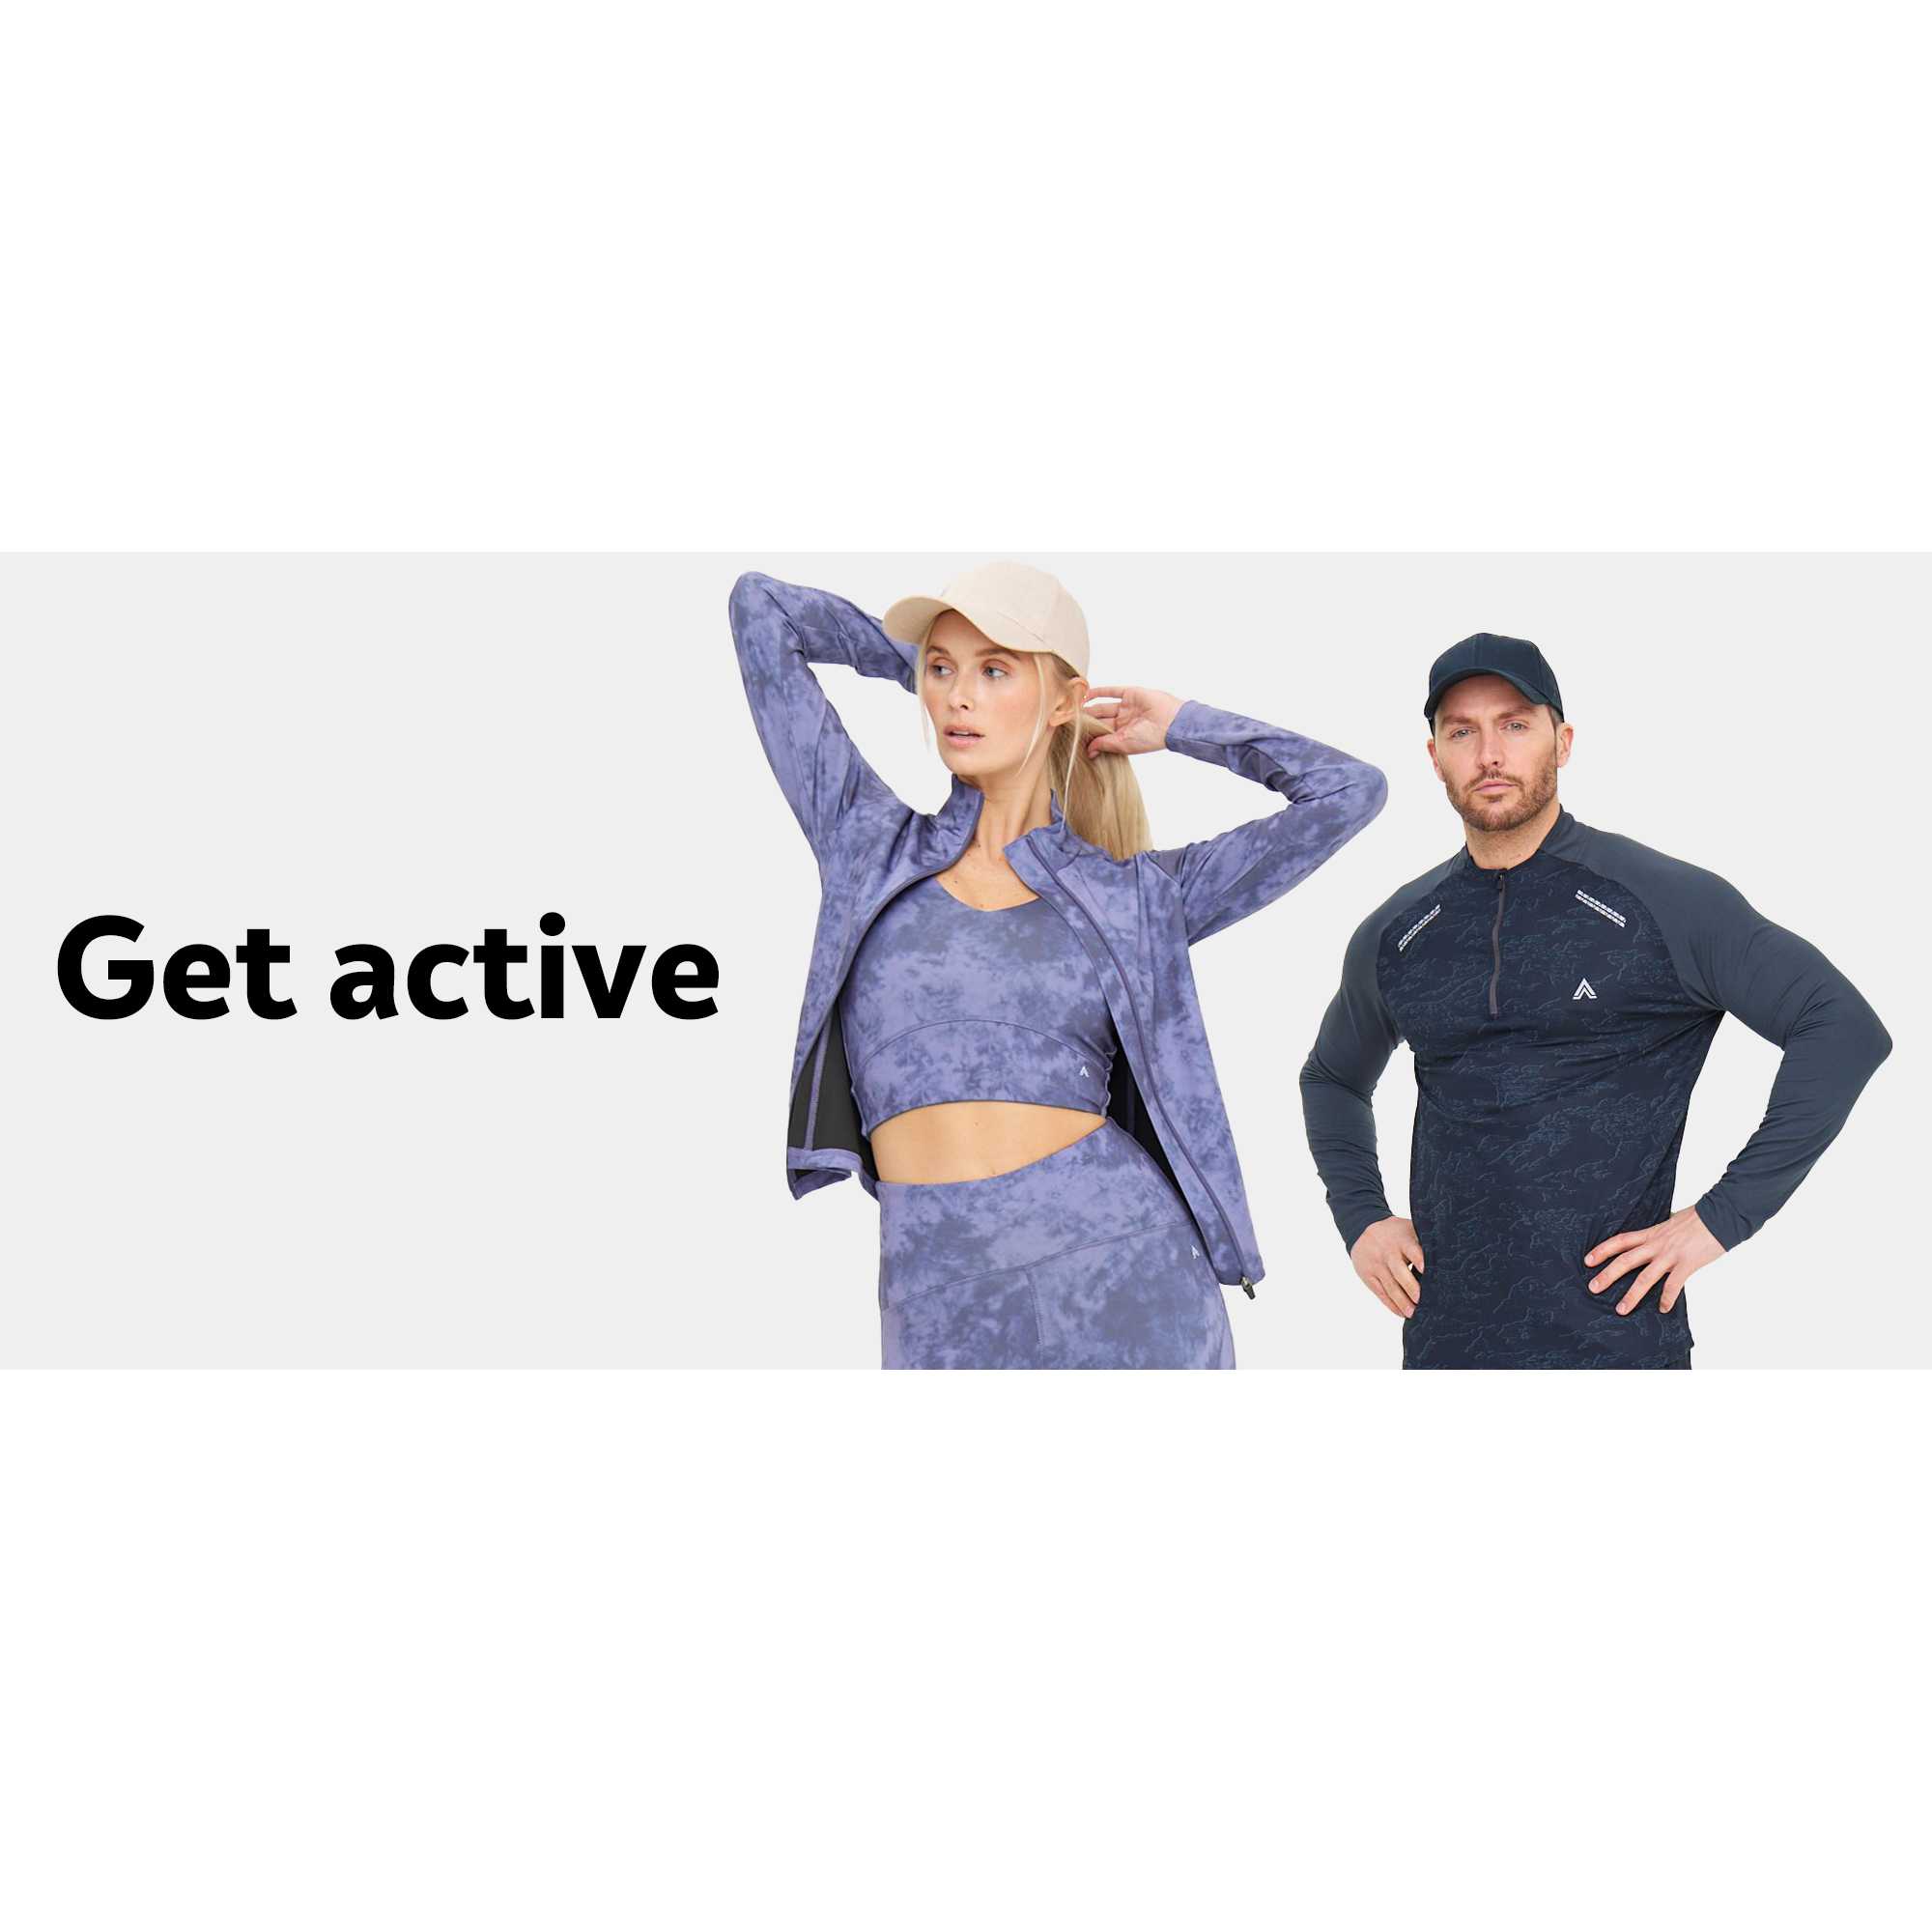 Get active.